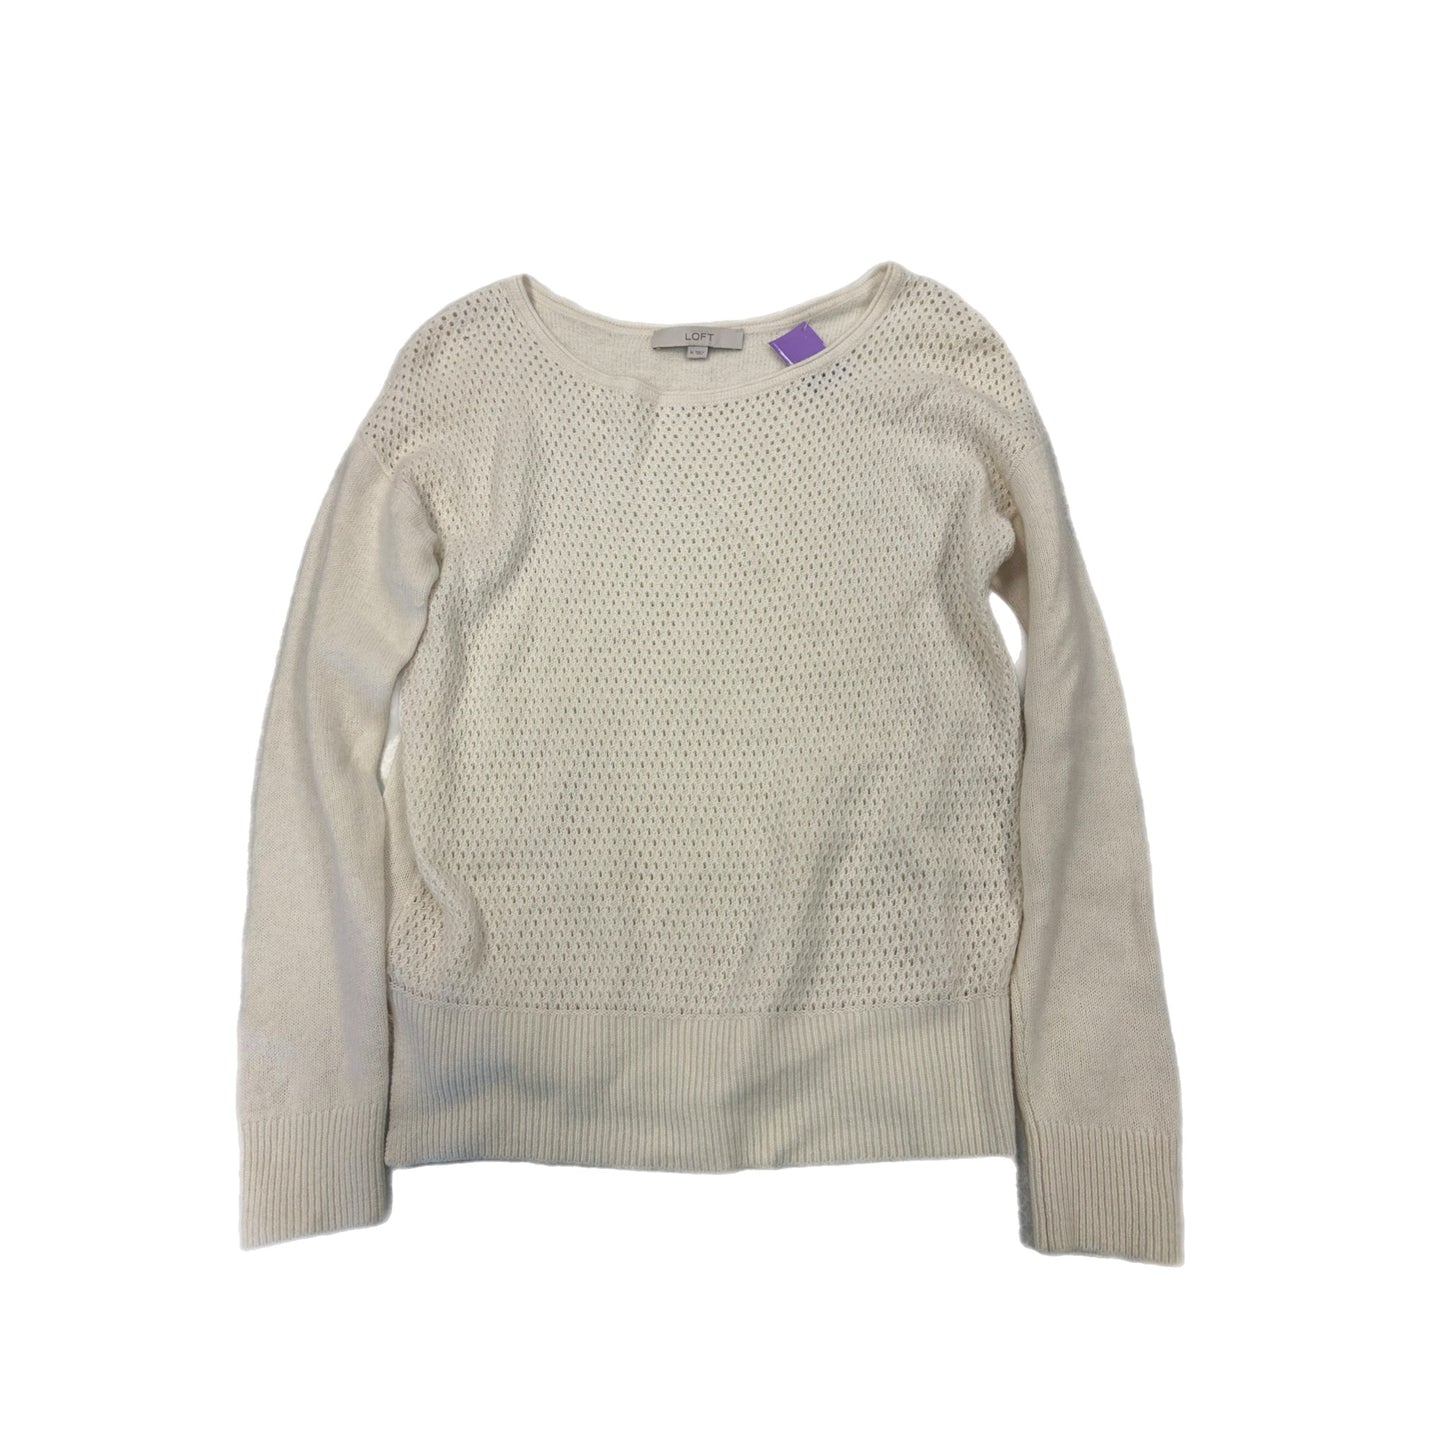 Sweater By Loft  Size: 14